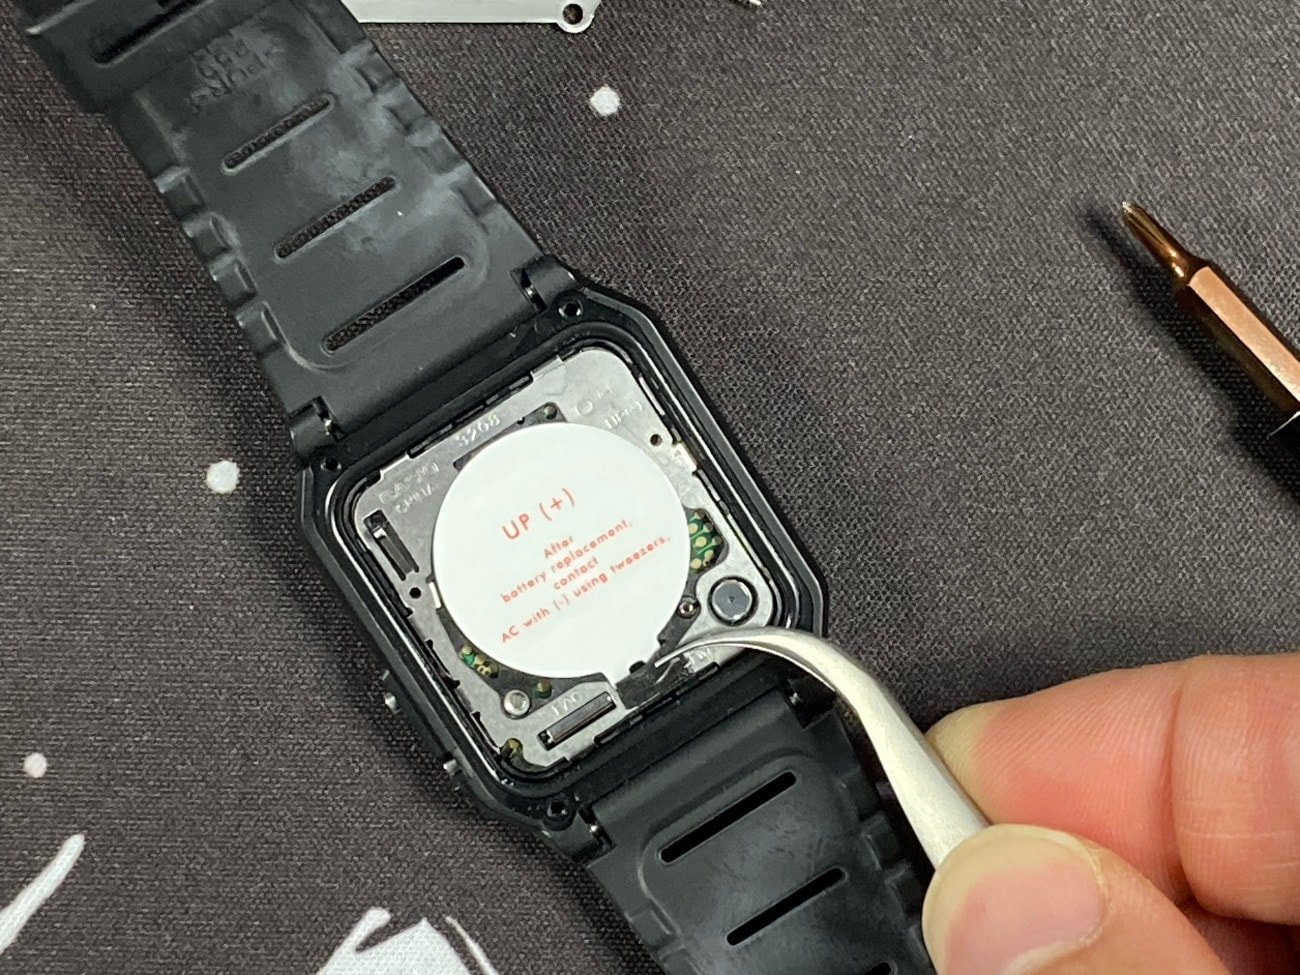 Cambiar la pila al reloj calculadora Casio CA-53W: quitamos el adhesivo negro. 